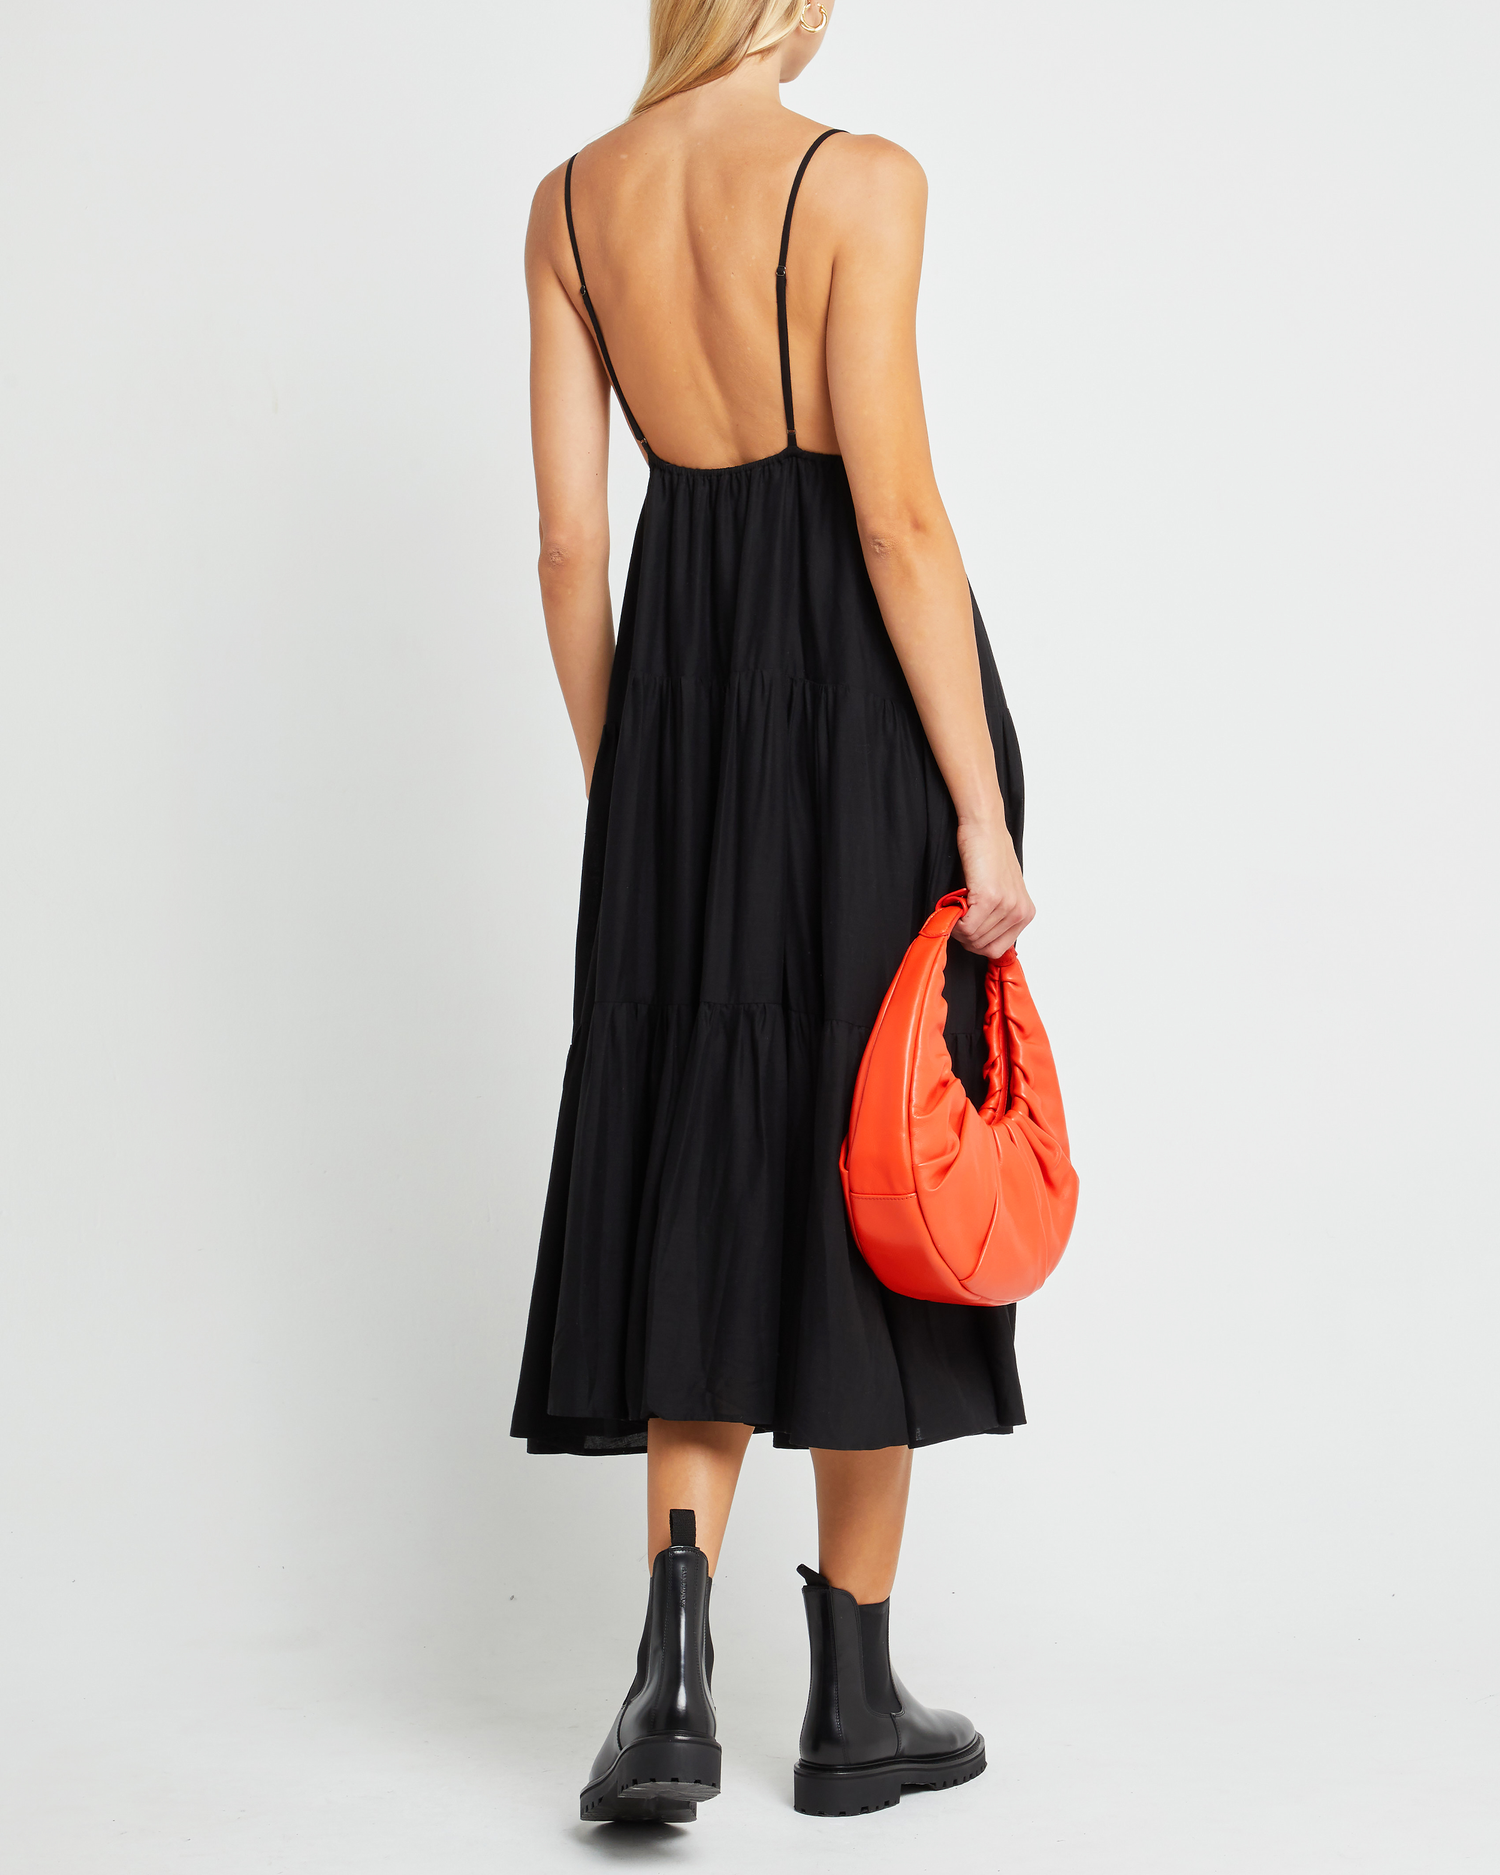 Second image of Coco Dress, a black midi dress, open back, spaghetti straps